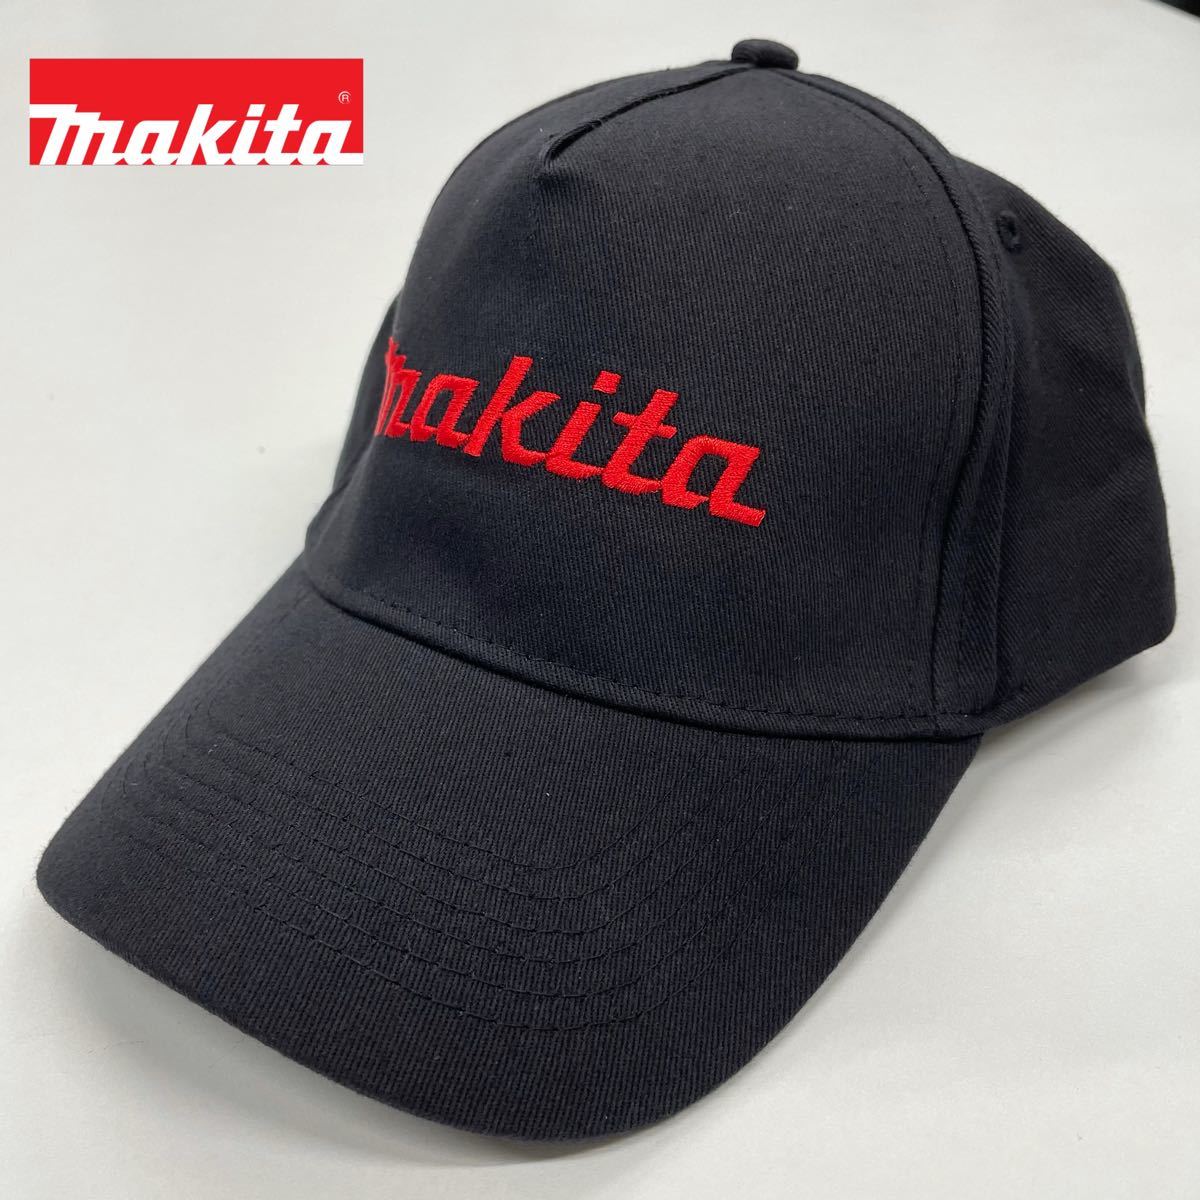 マキタ・帽子・新品